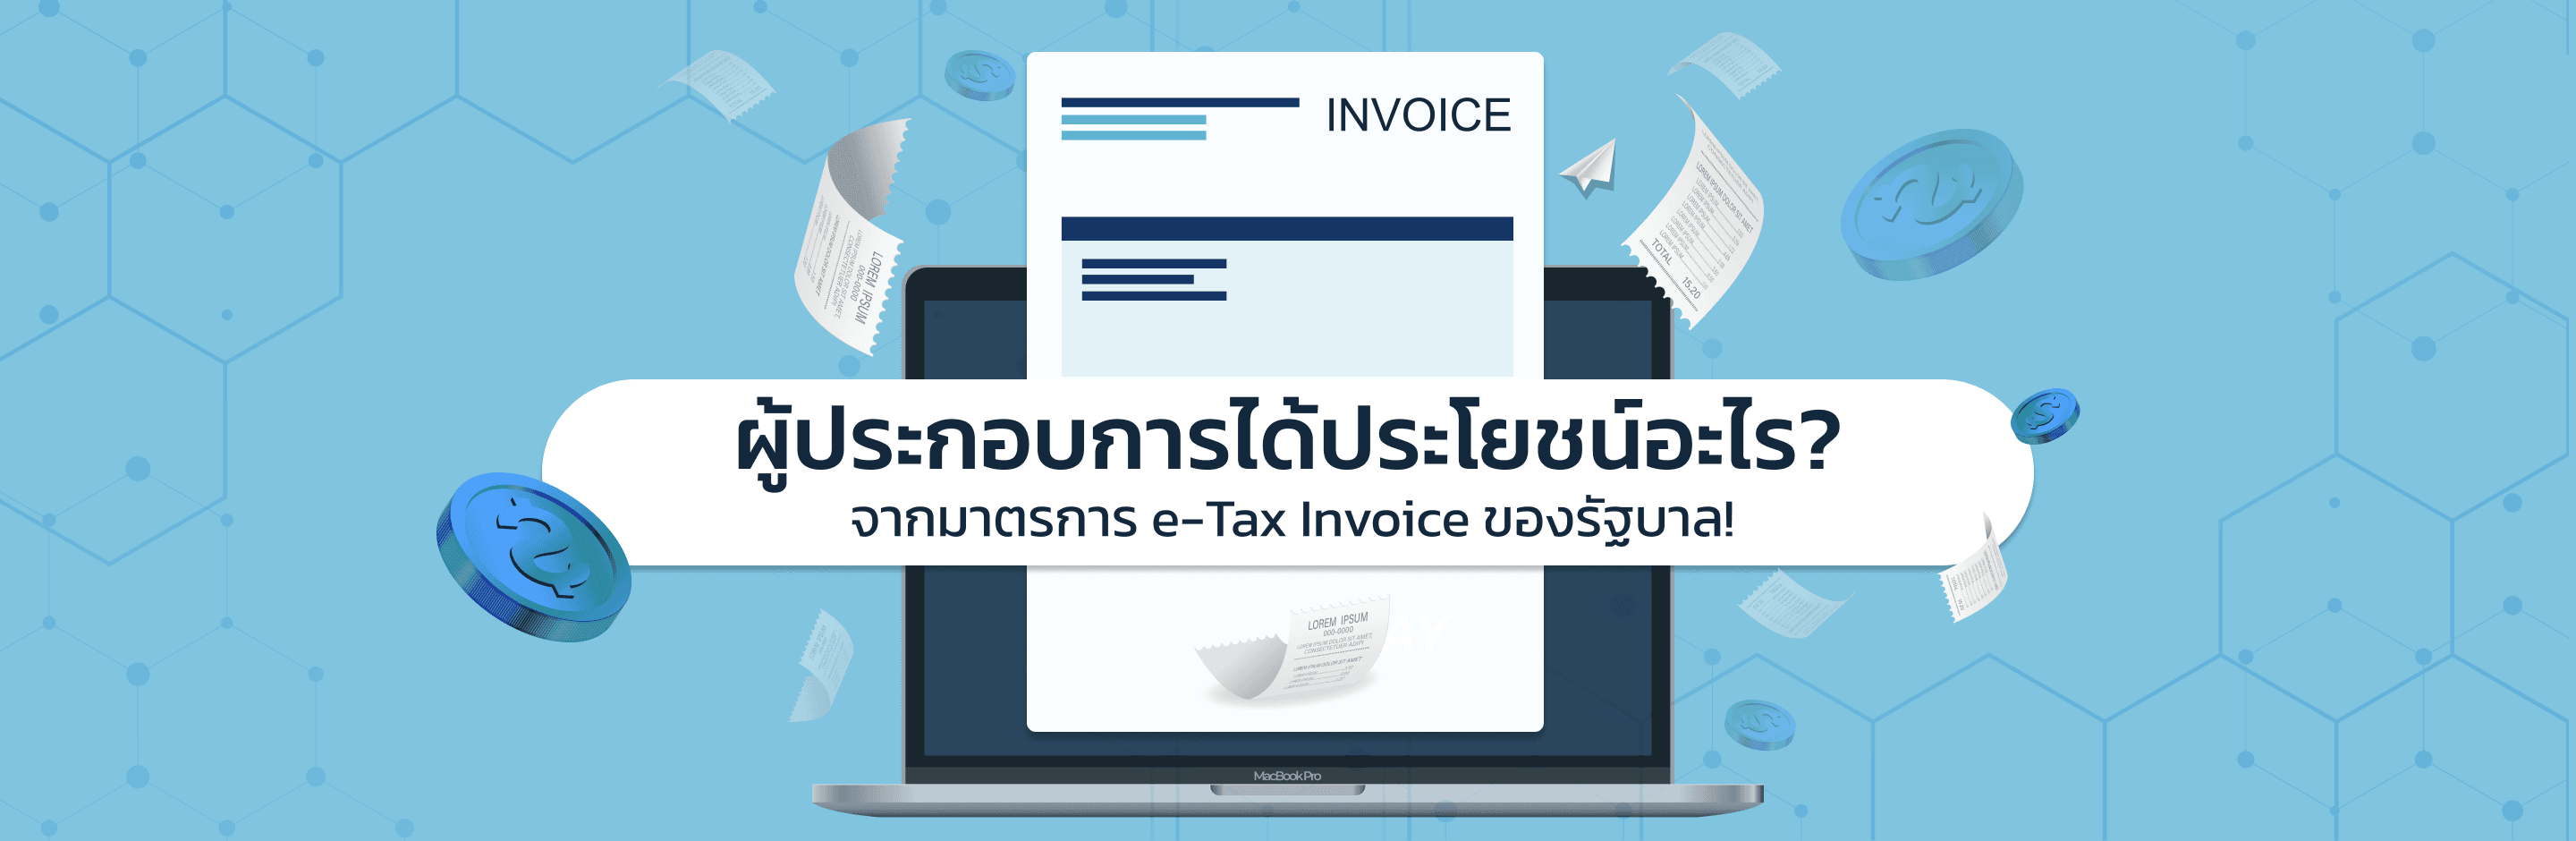 ผู้ประกอบการได้ประโยชน์อะไร? จากมาตรการ e-Tax Invoice ของรัฐบาล!